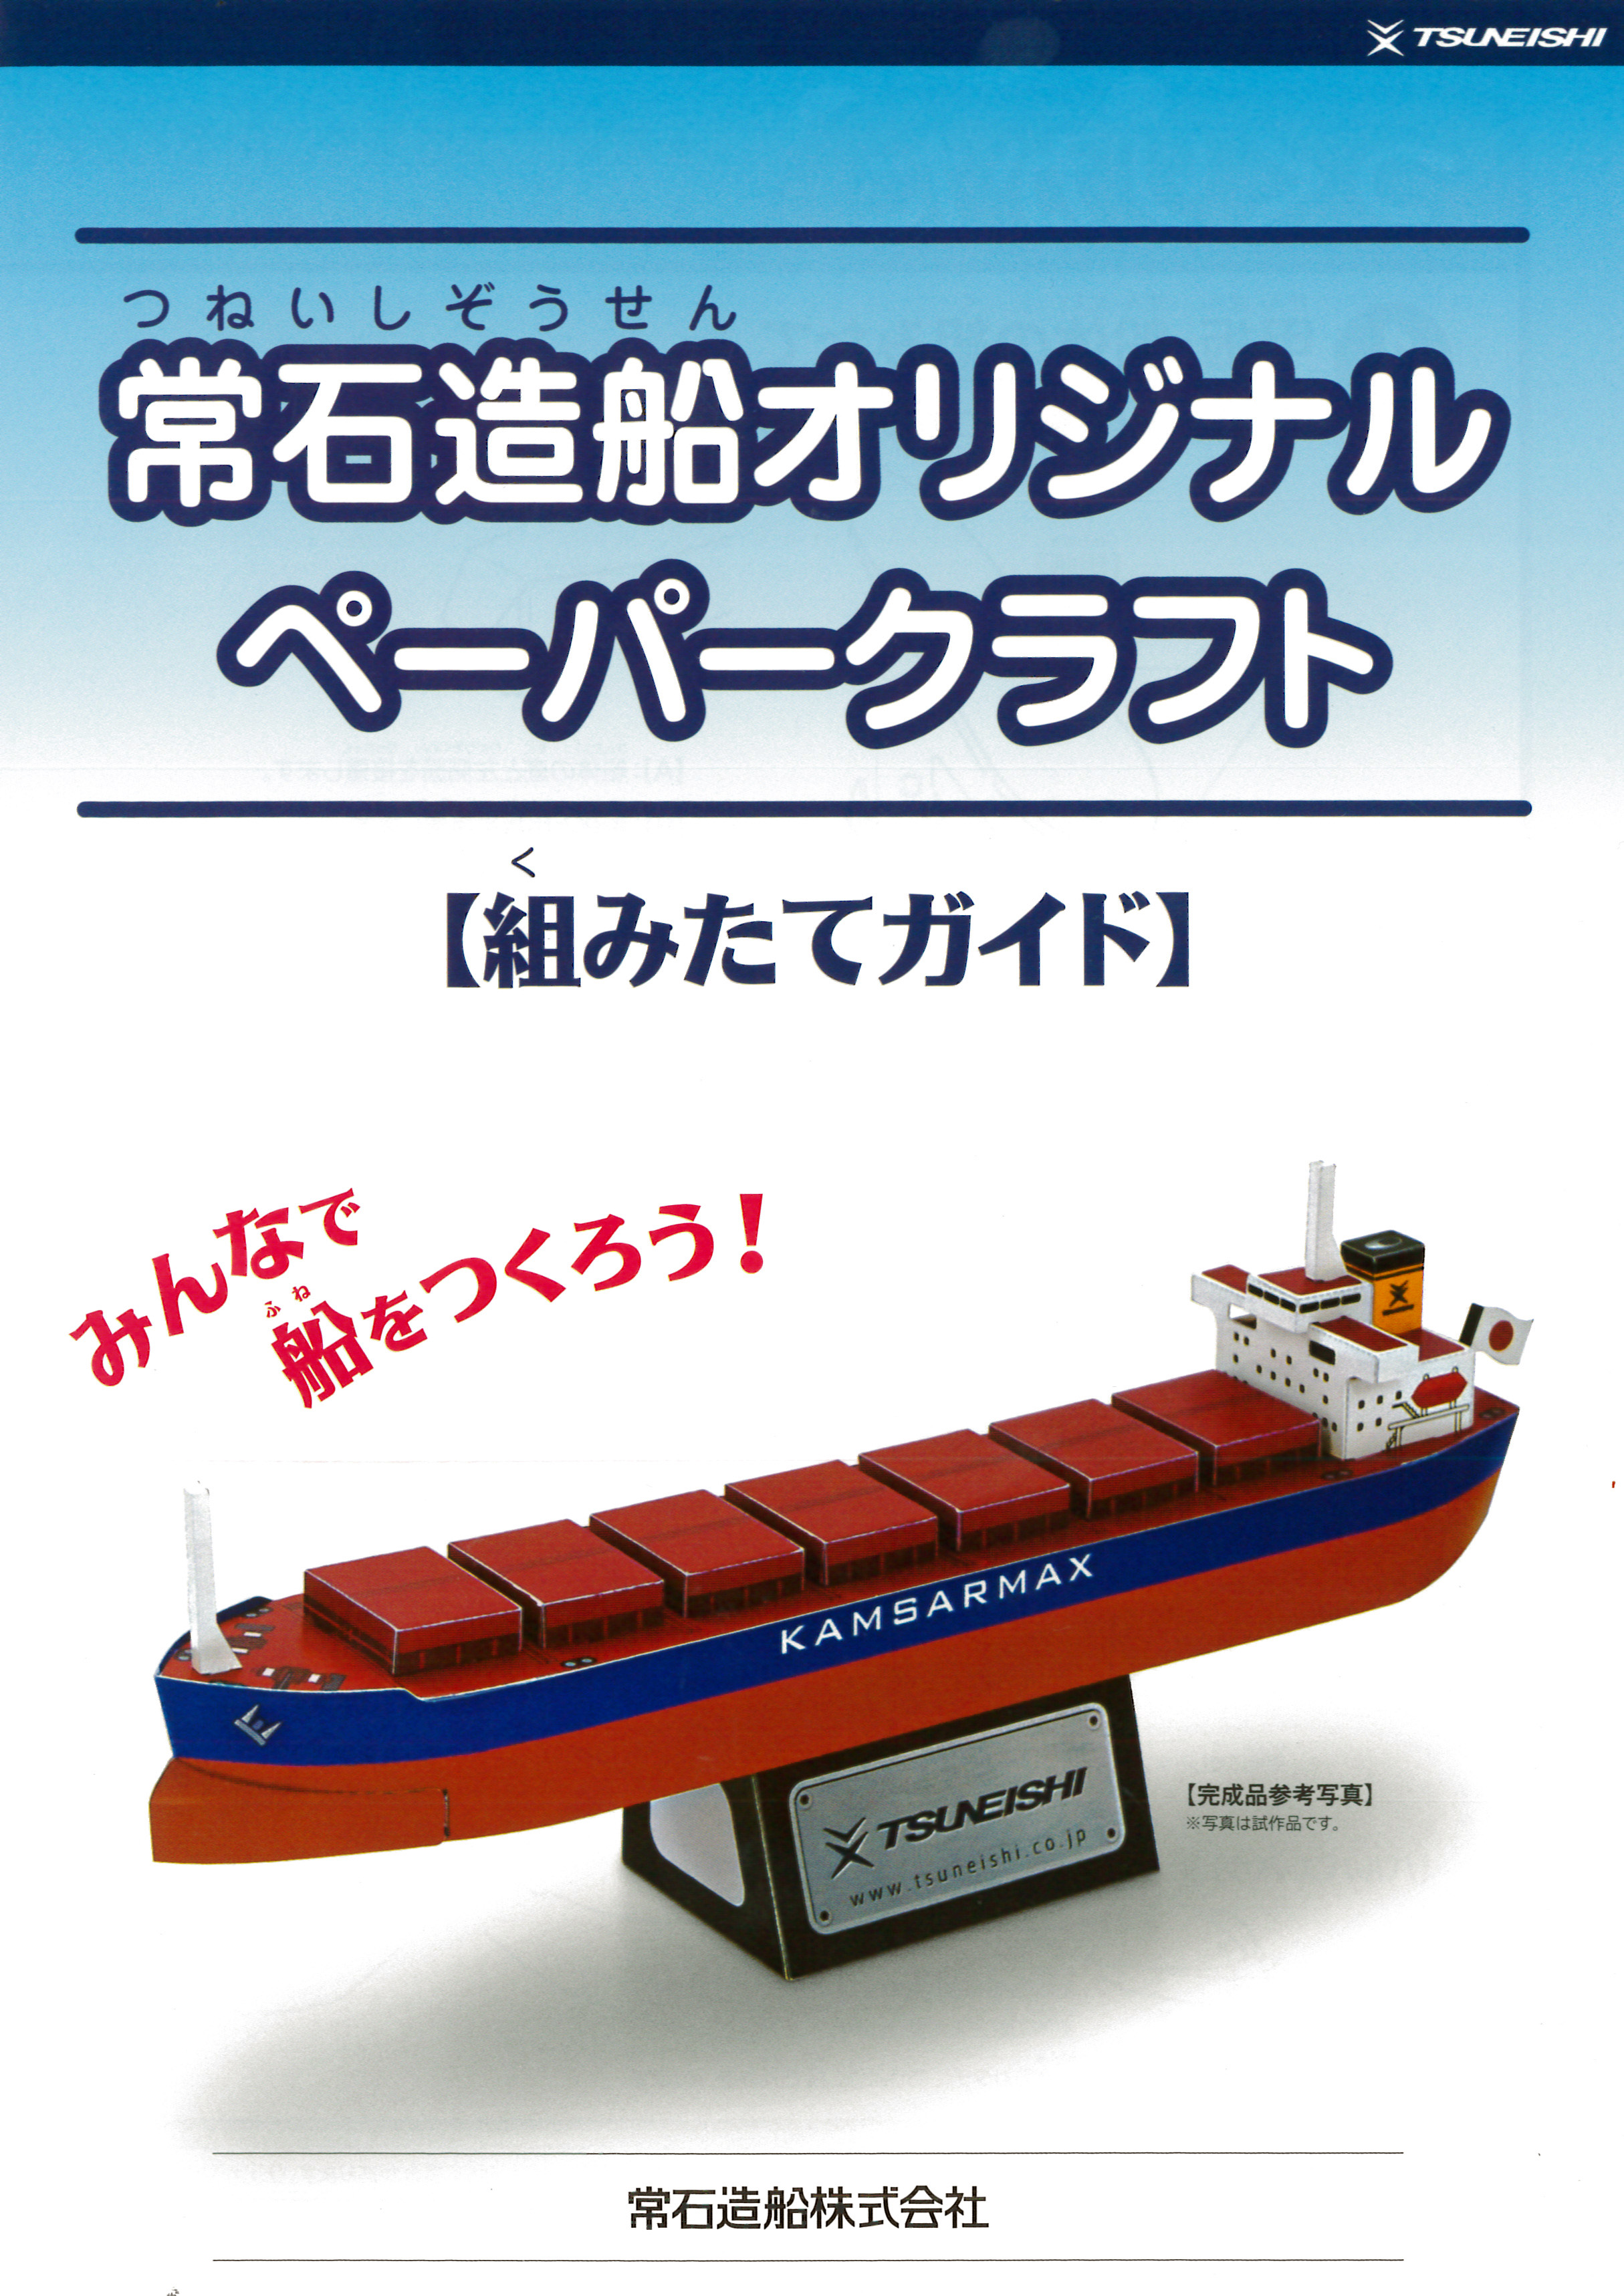 進水式プランの特典　常石造船オリジナルペーパークラフトを進呈(予定)